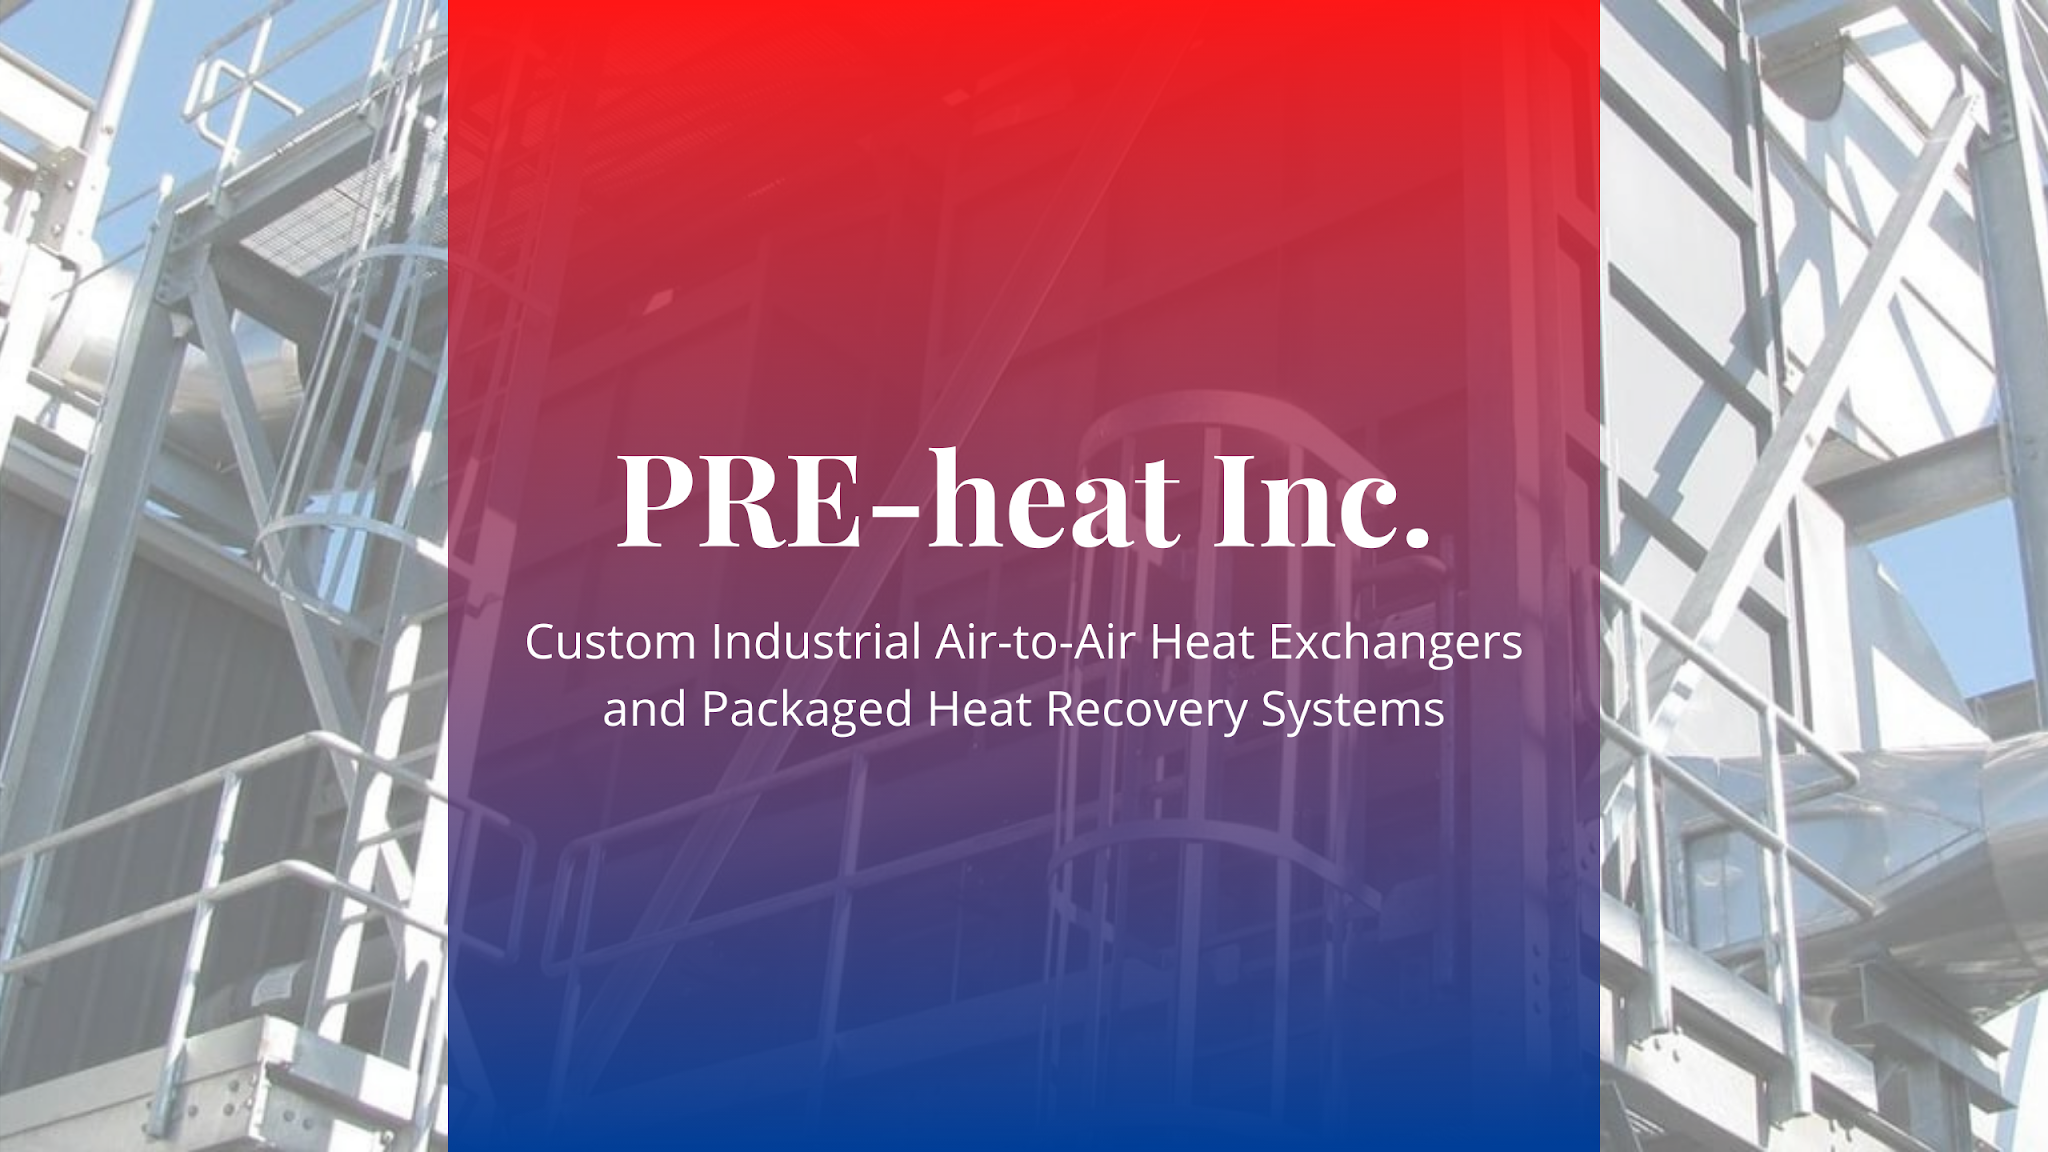 PRE-Heat, Inc. Images